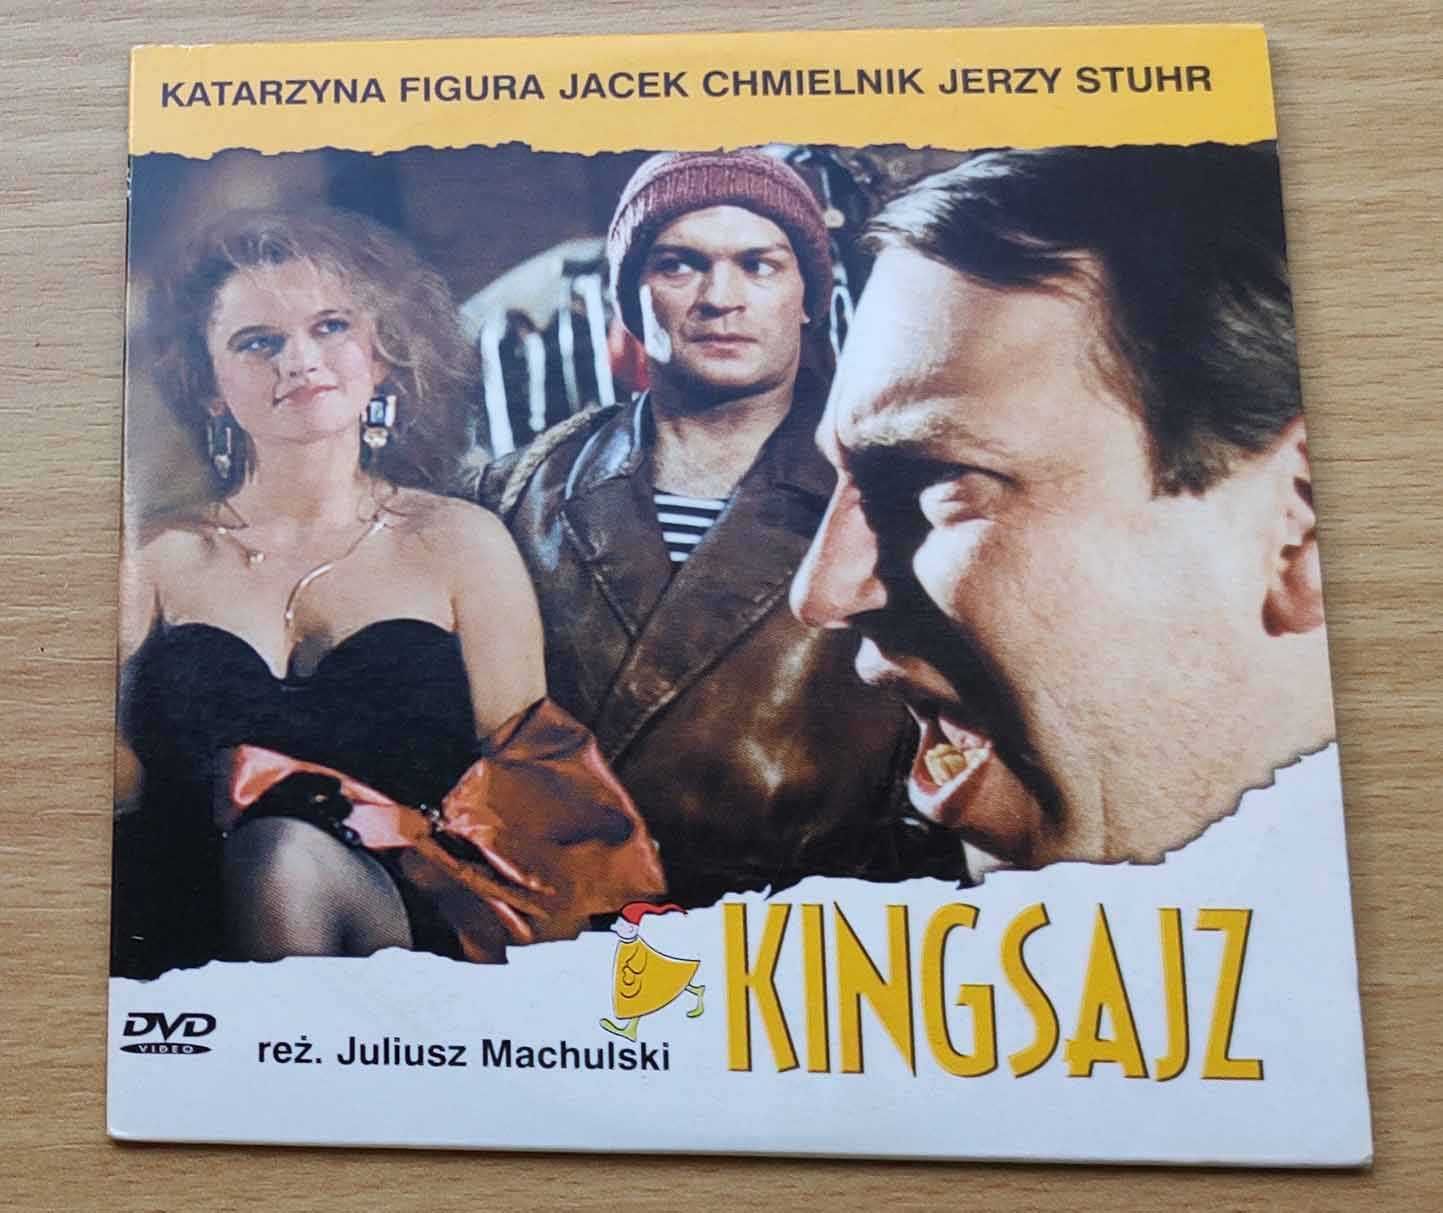 Kingsajz - film na płycie dvd - komedia polska z K. Figurą